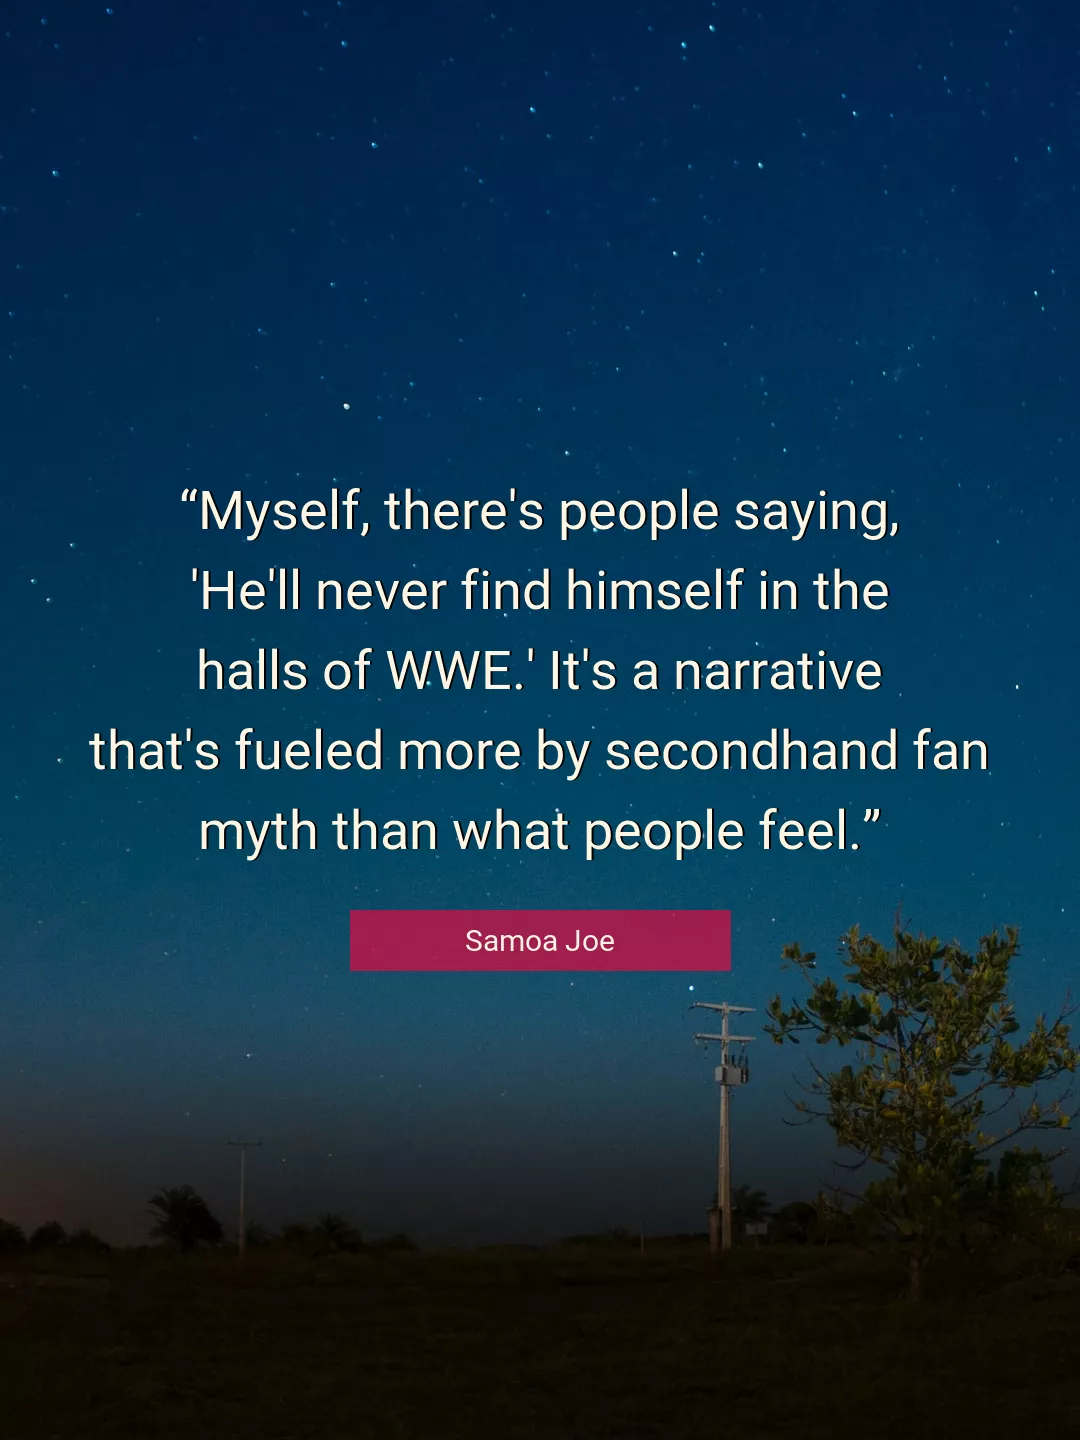 Quote About Myself By Samoa Joe